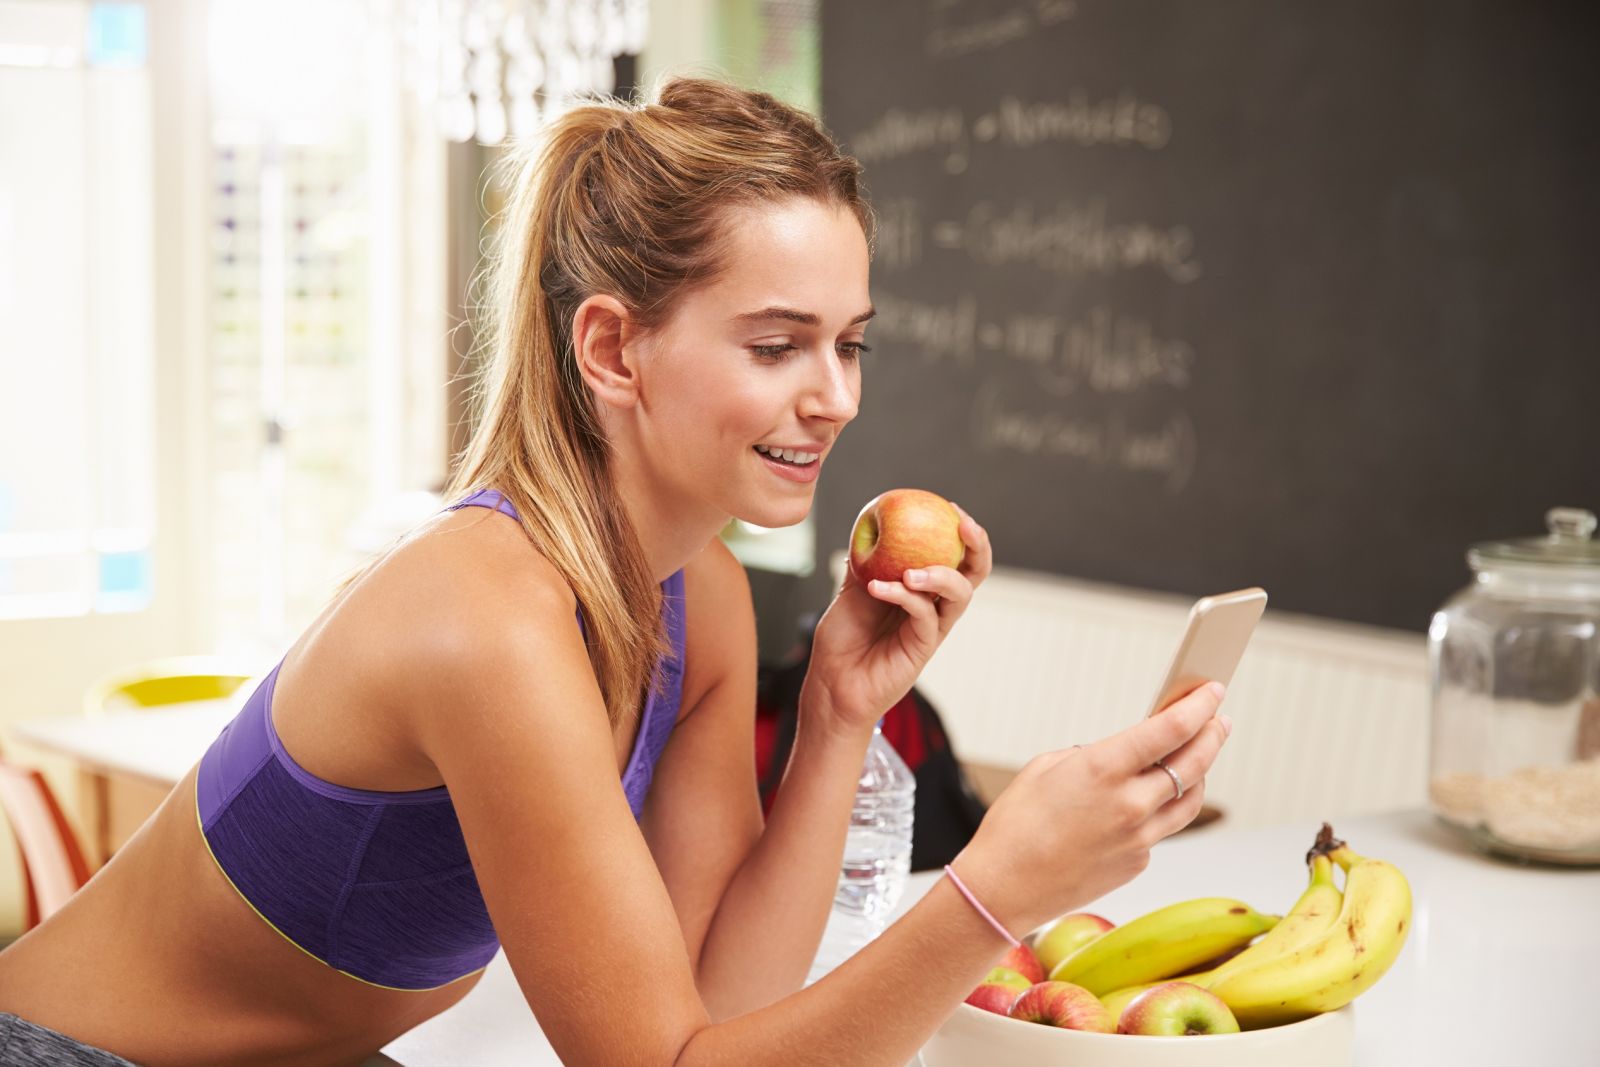 Mỗi ngày bạn ăn một quả táo sẽ góp phần cải thiện tim mạch, giảm mắc bệnh tiểu đường